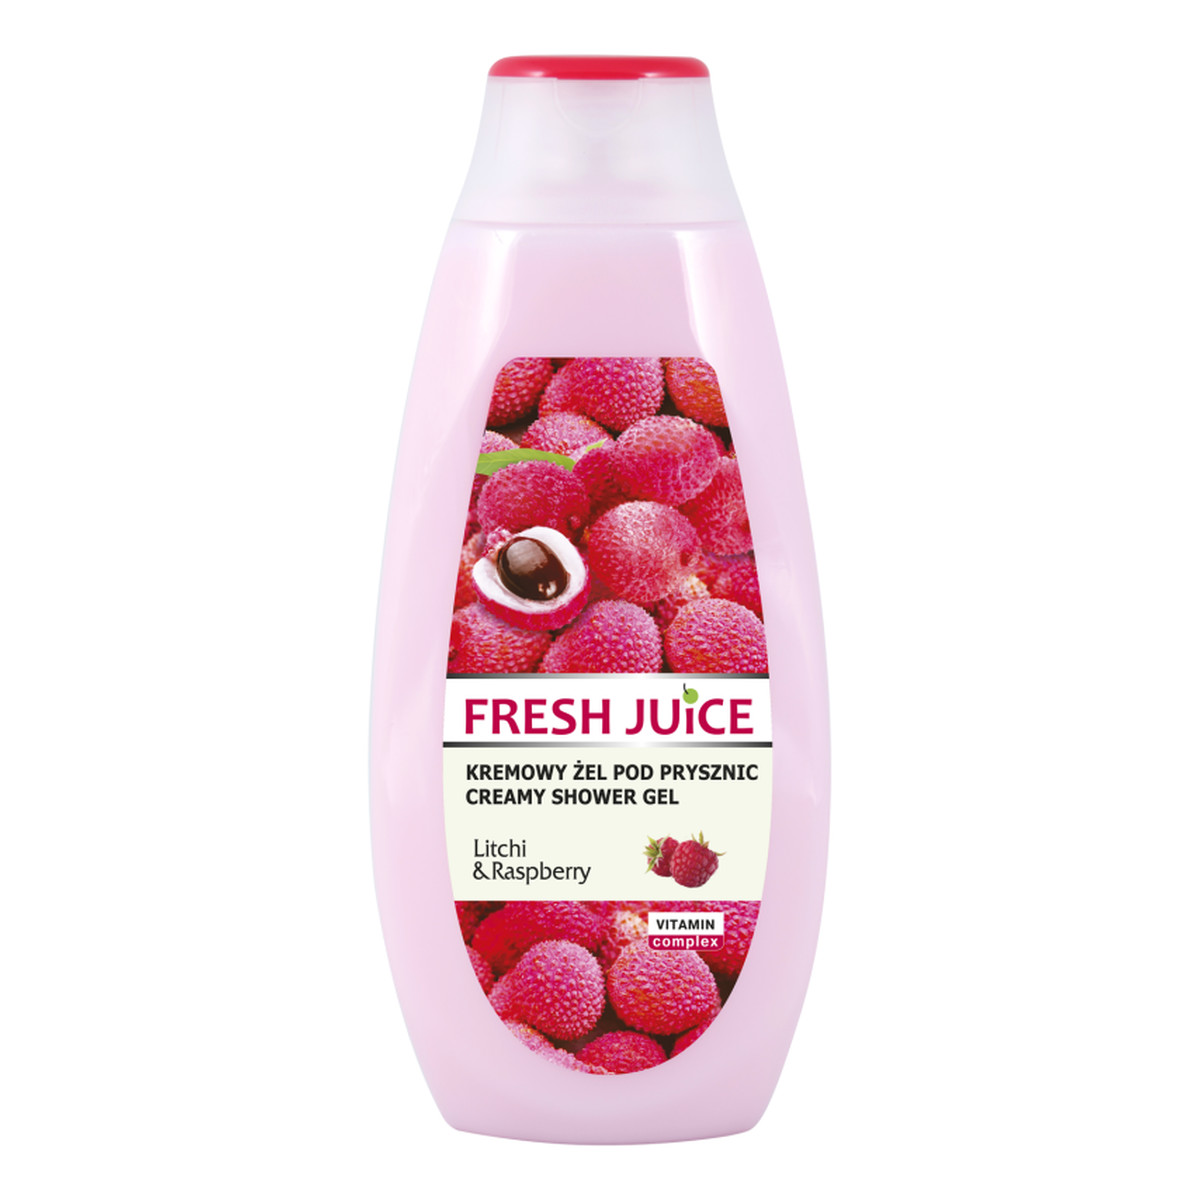 Fresh Juice litchi & raspberry kremowy żel pod prysznic 400ml